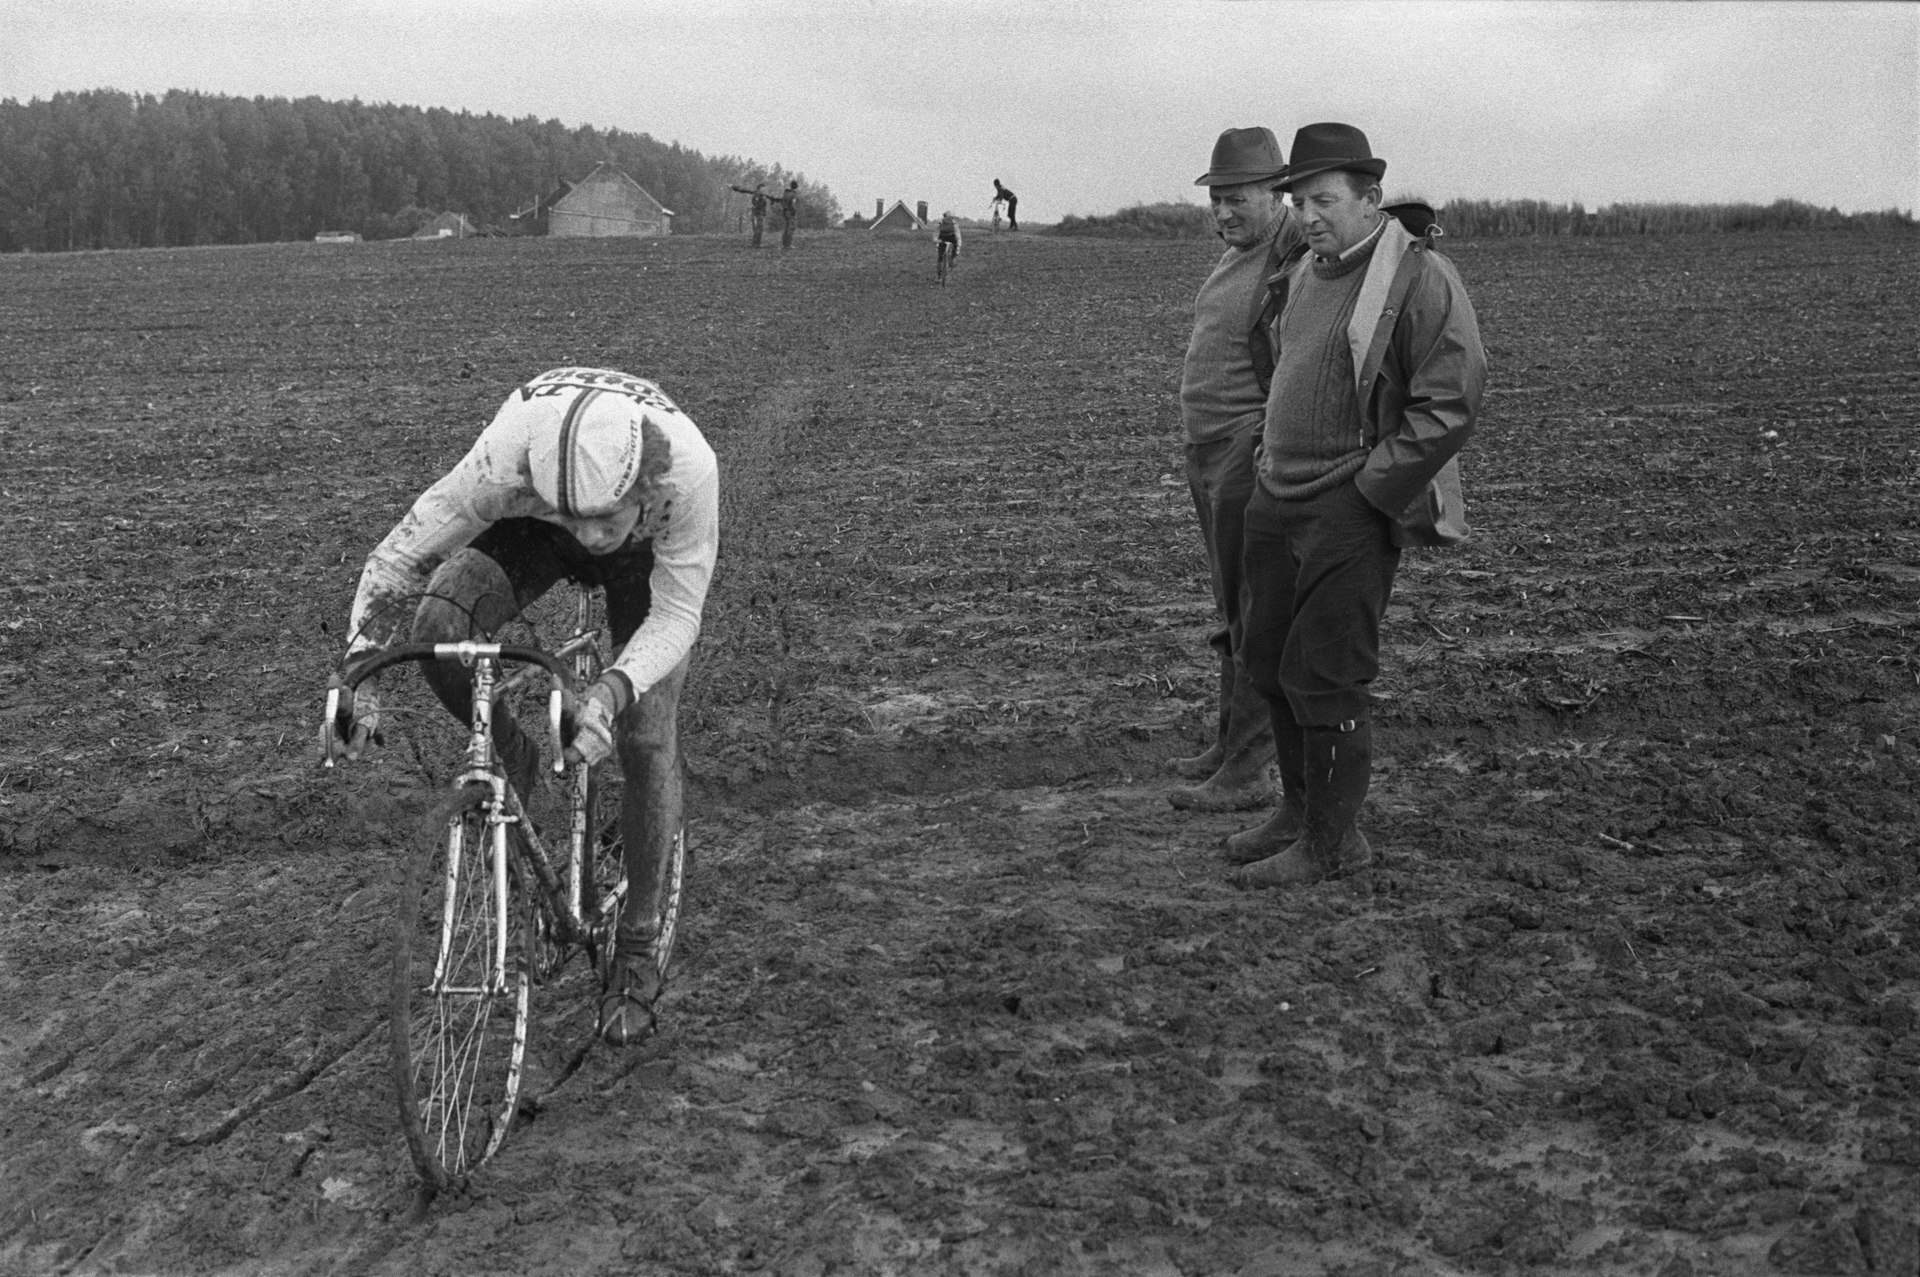 BELGIUM. Vossem. 09/10/82. Bicycle race.